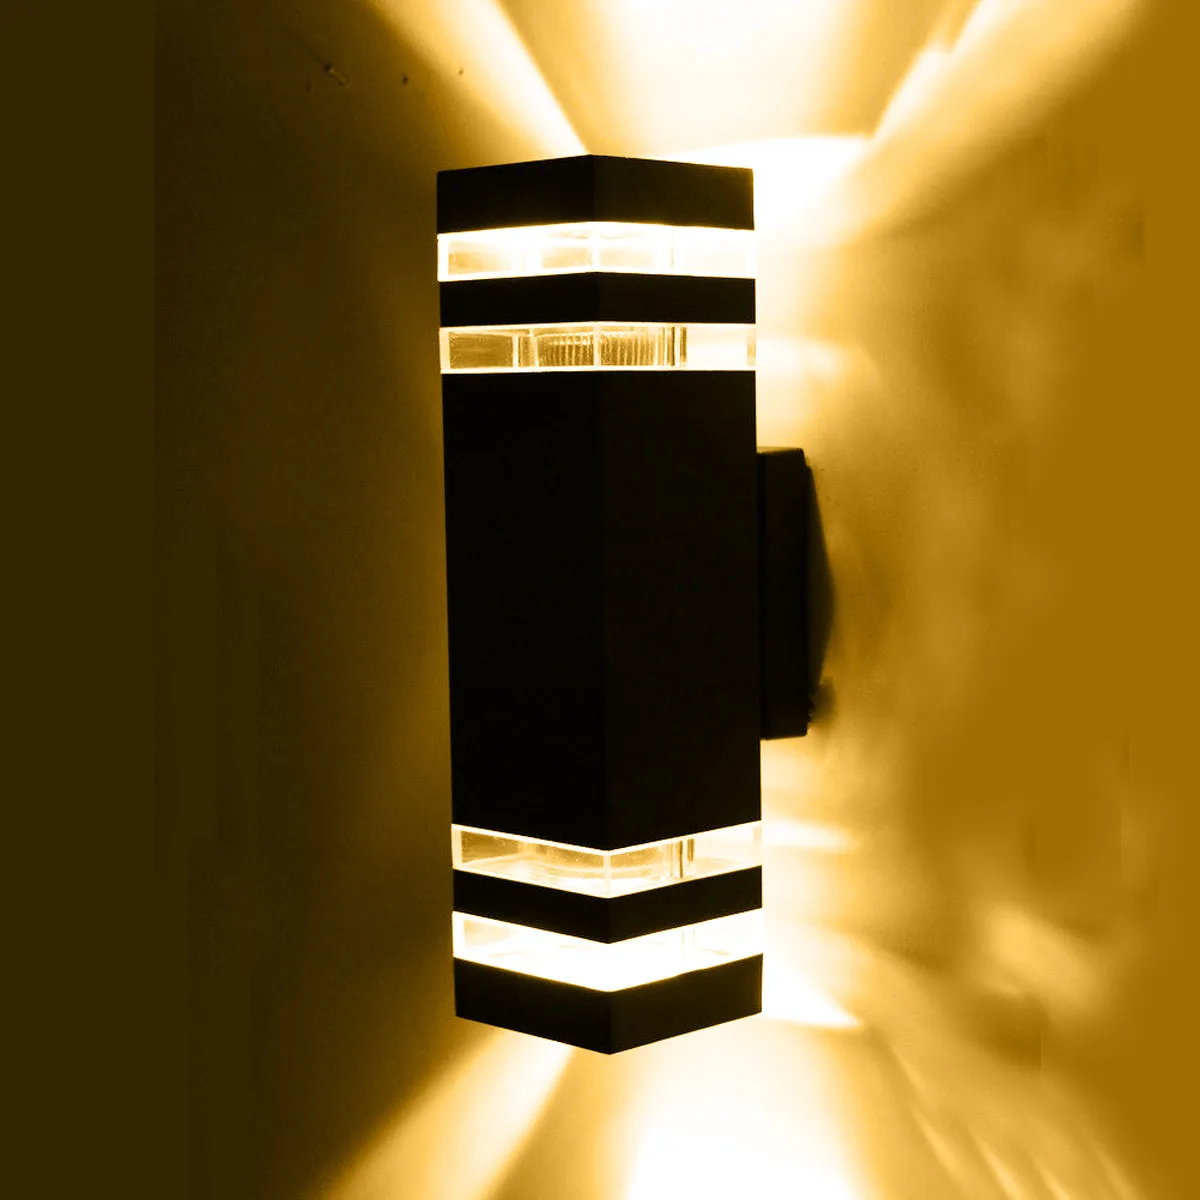 2 шт./лот, Современный наружный настенный светильник/напольный настенный светильник/светодиодный Светильники для крыльца/водонепроницаемый IP65 лампа AC85-265V - Испускаемый цвет: Тёплый белый